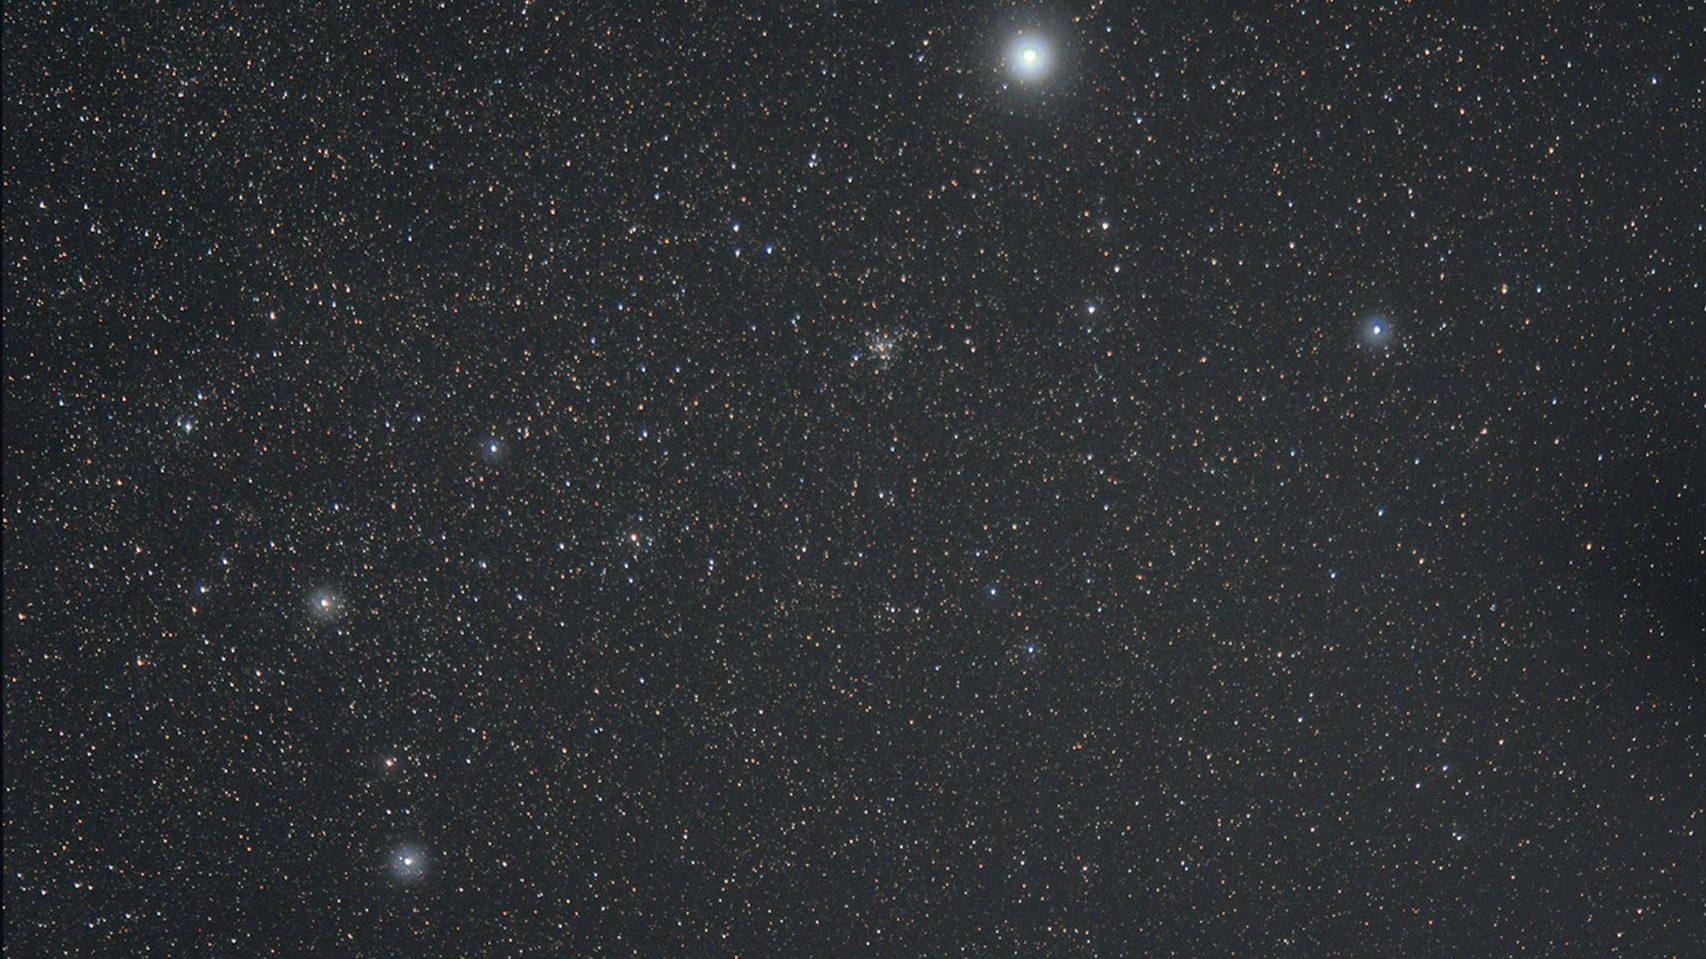 În constelația Câinele Mare găsim roiuri stelare deschise din diverse cataloage, vizibile prin binoclu. Rolf Löhr / CCD Guide